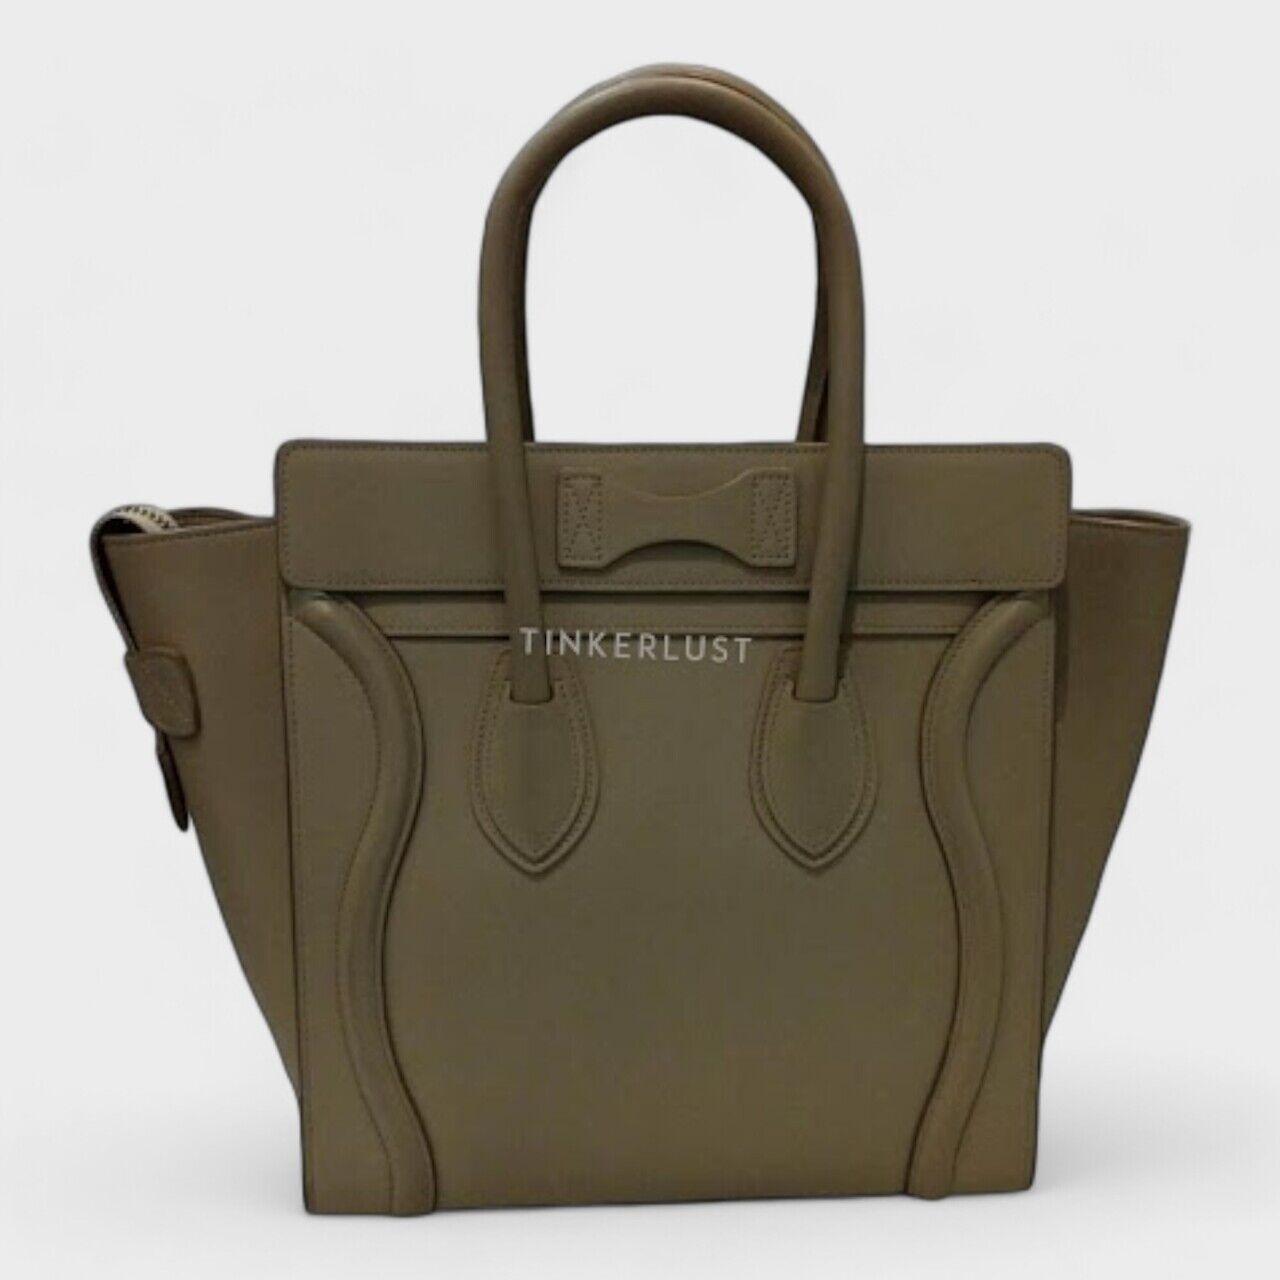 Celine Mini Luggage Taupe 2016 Handbag